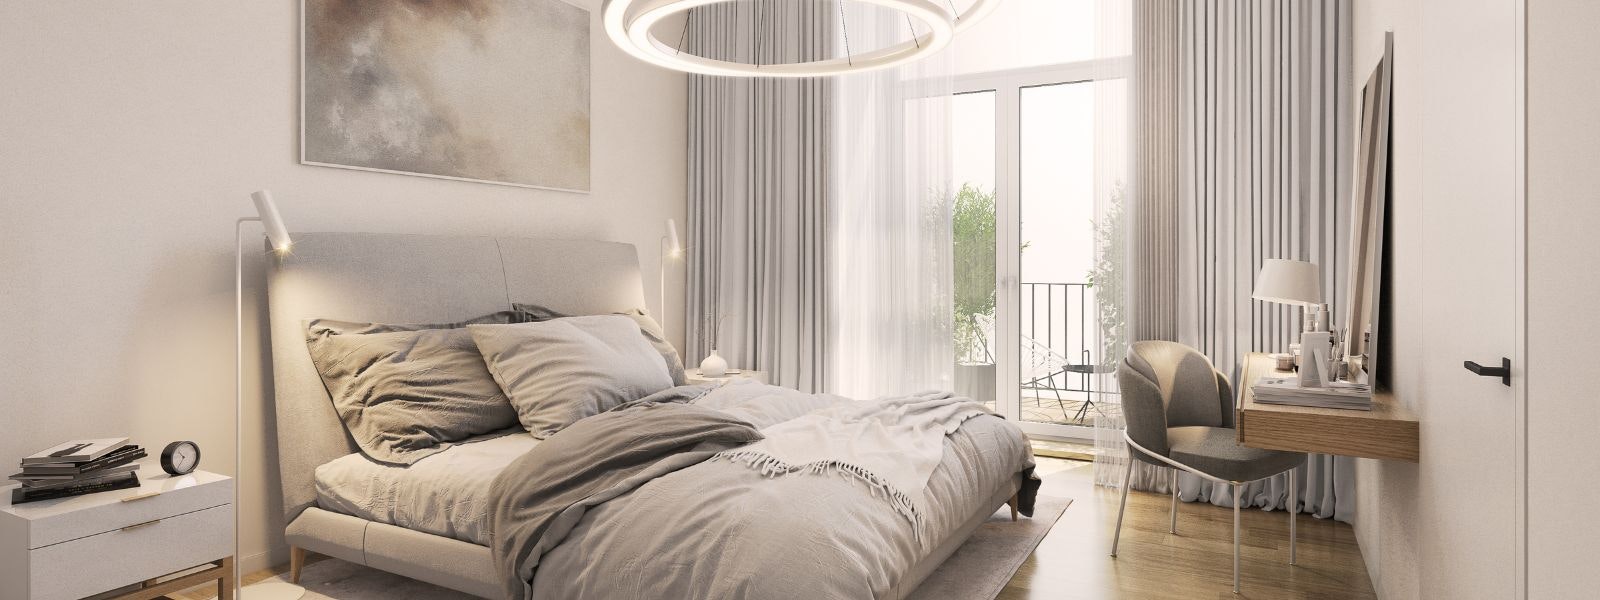 Illuminazione camera da letto: come scegliere le lampade da comodino